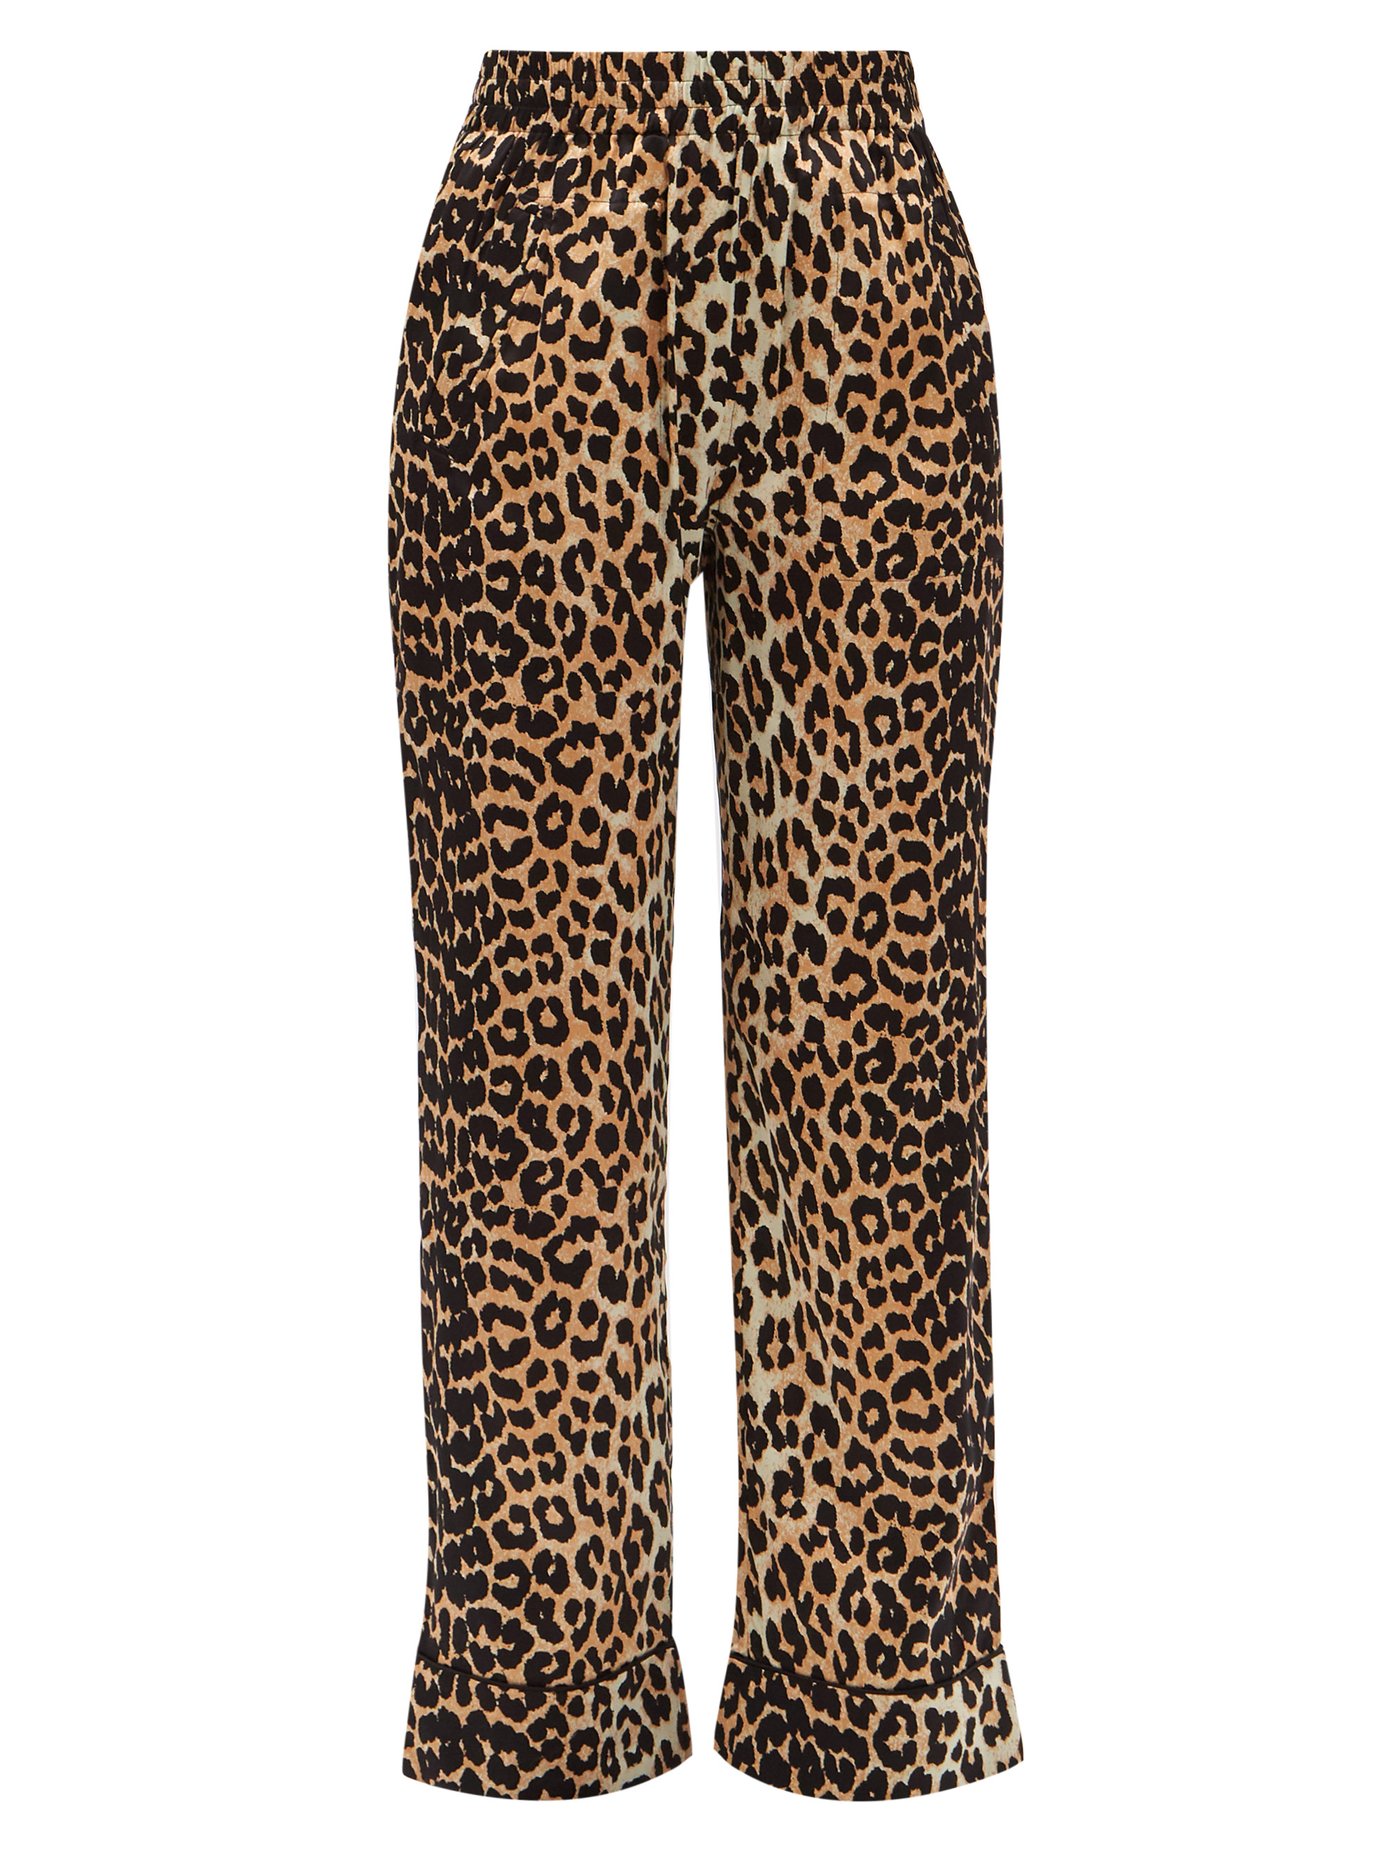 ganni leopard jeans